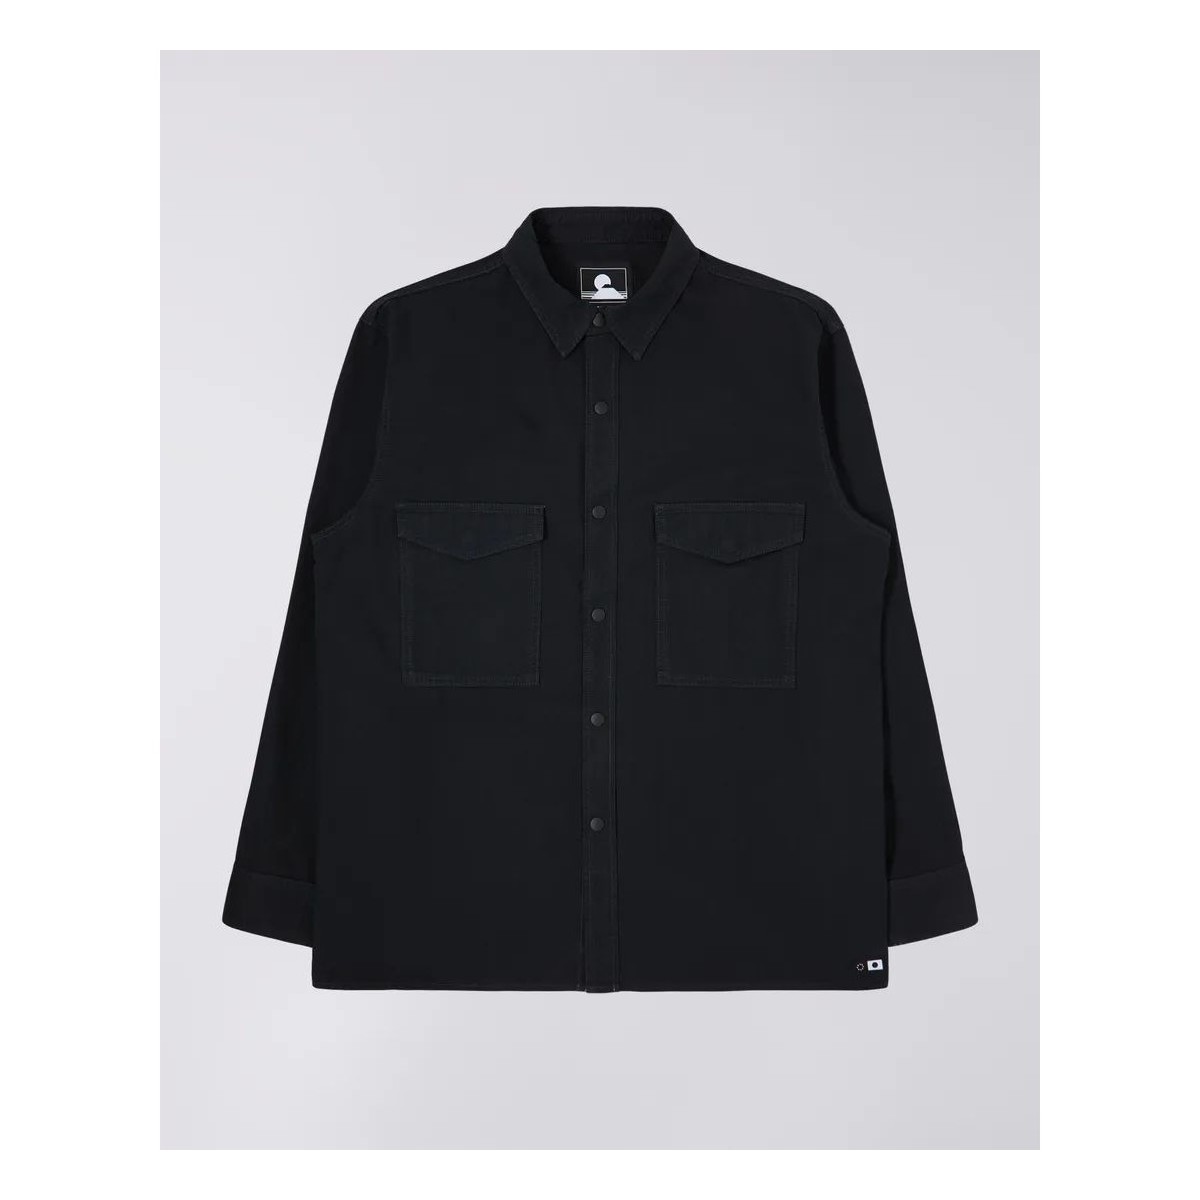 Vêtements Homme Chemises manches longues Edwin I030301 BIG SHIRT-89 BLACK Noir